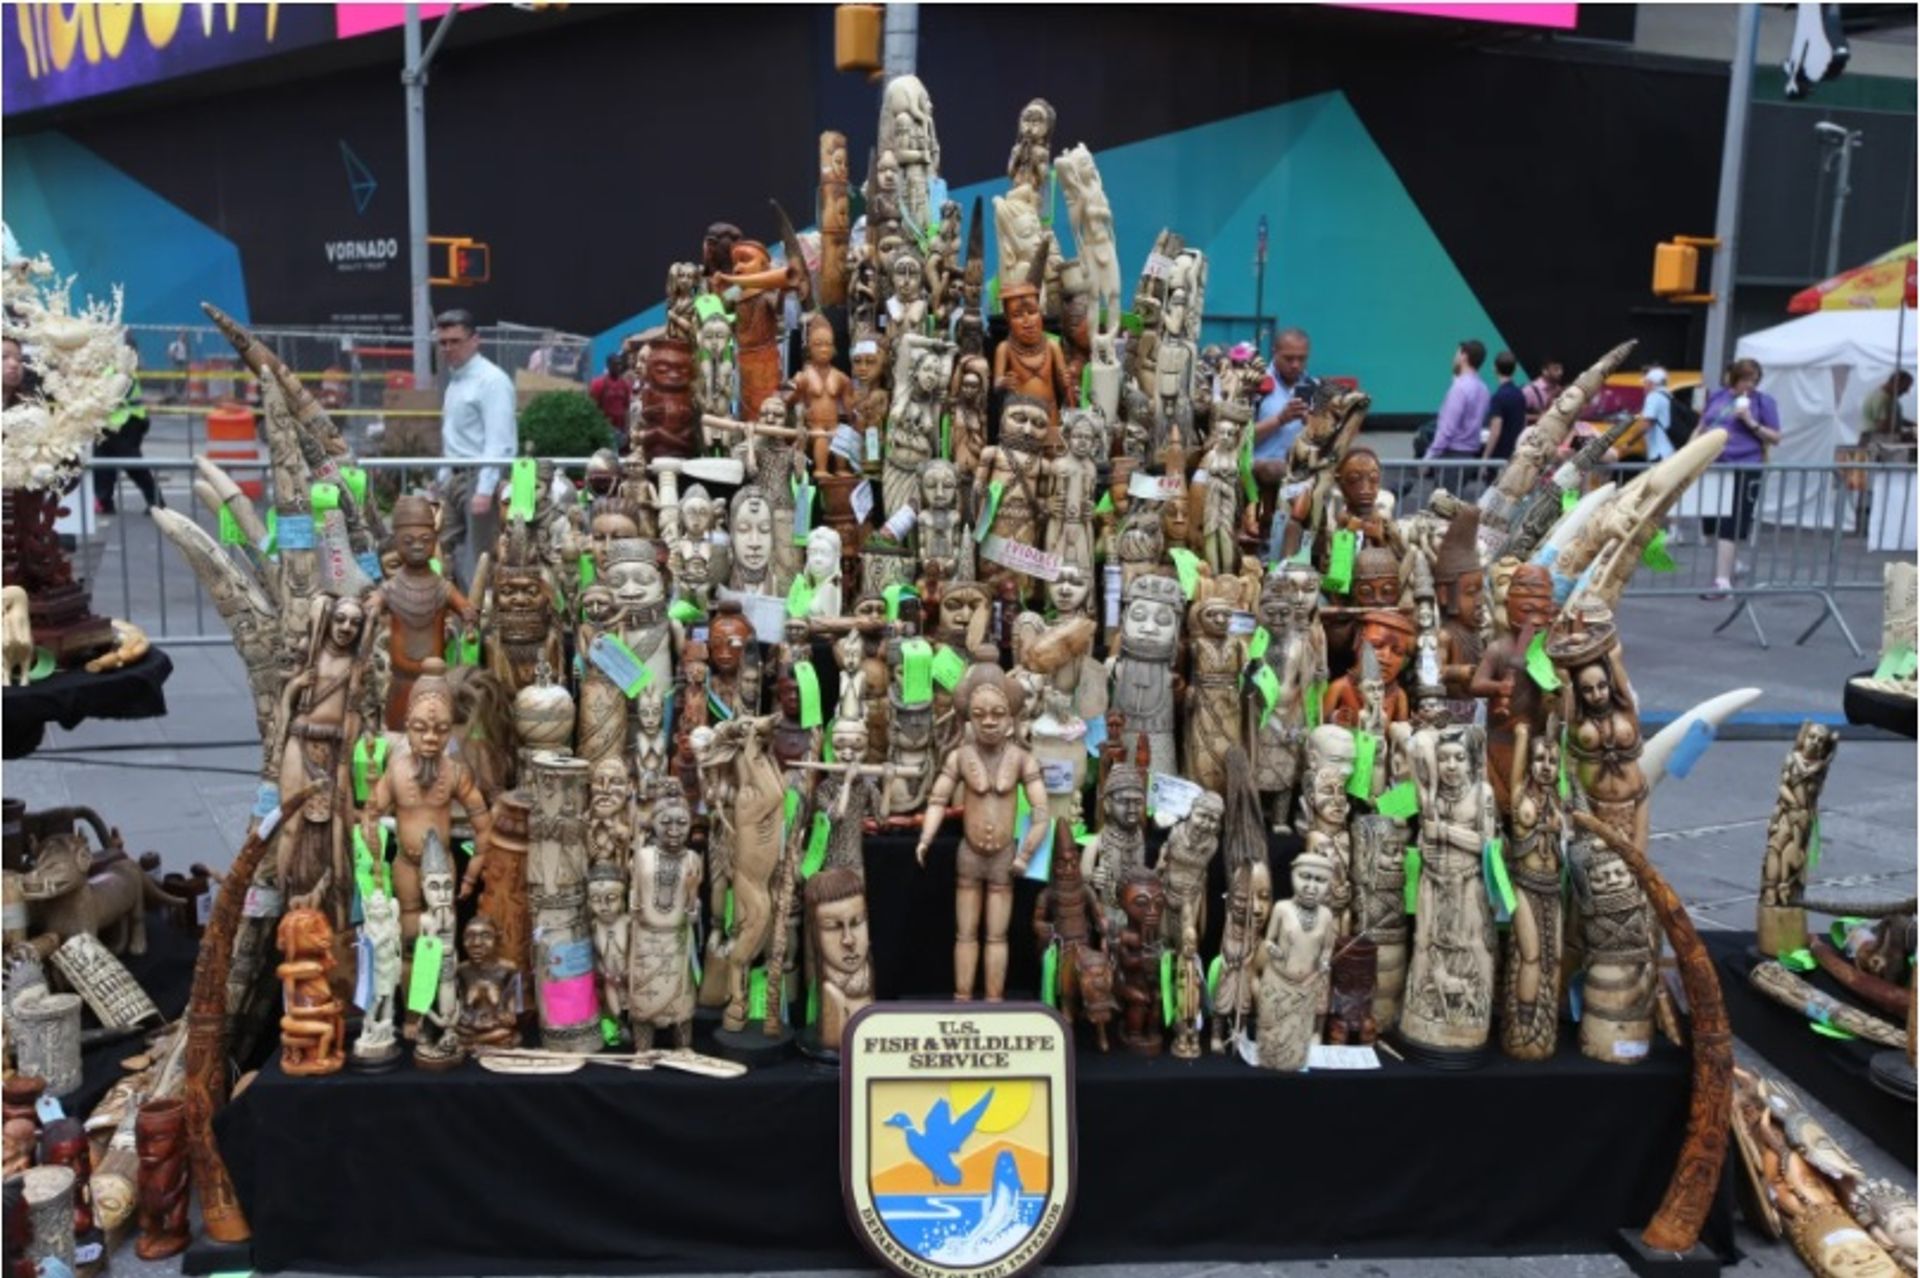 חלק מחפצי השנהב שנתפסו הושמדו במהלך אירוע ריסוק השנהב ב-2015 בטיימס סקוור.

טיילר גרין/FWS